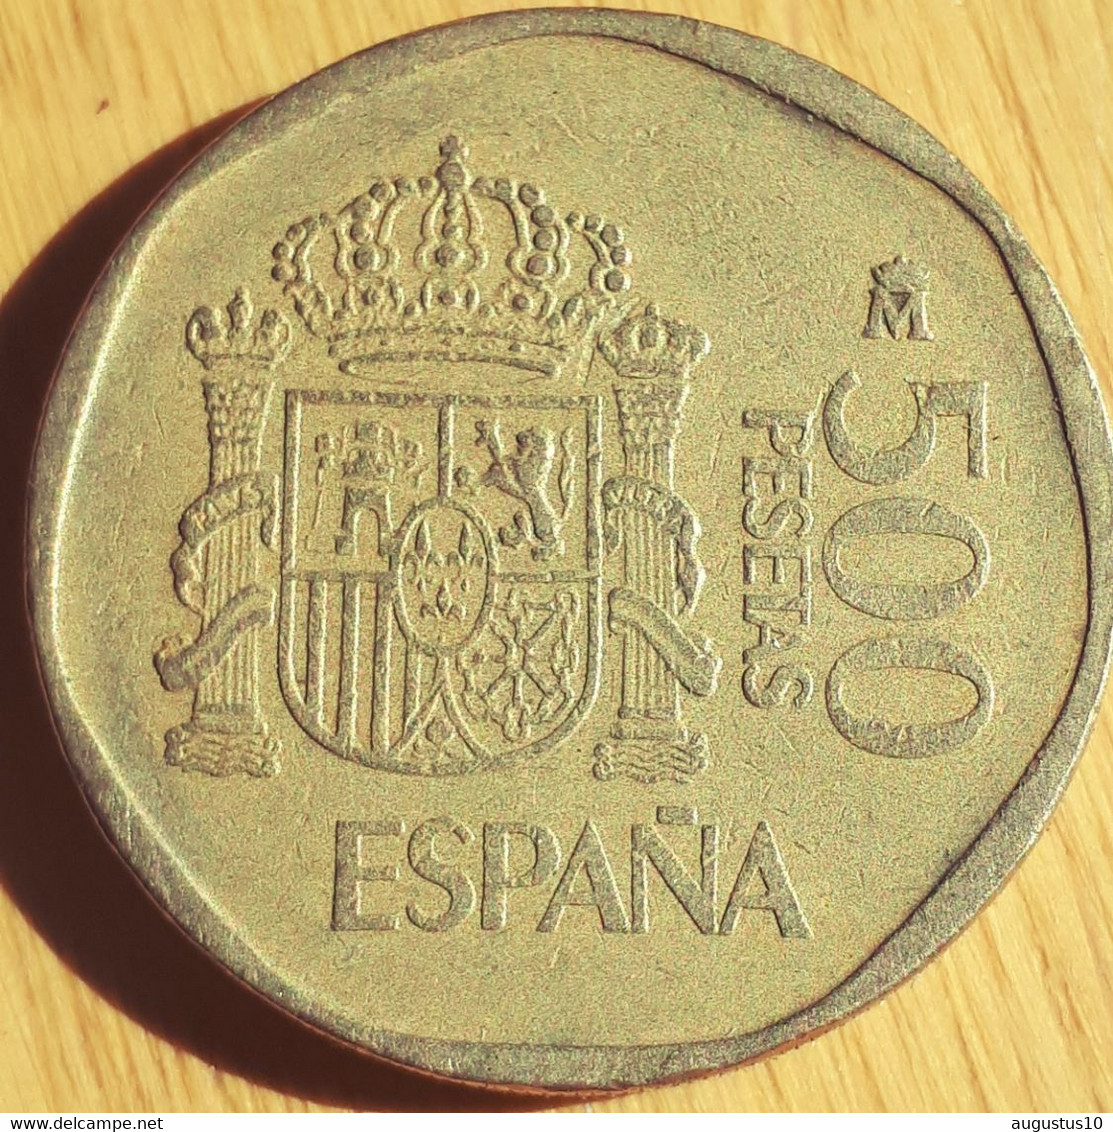 SPAIN :500 PESETAS 1987  KM 831 - 500 Peseta